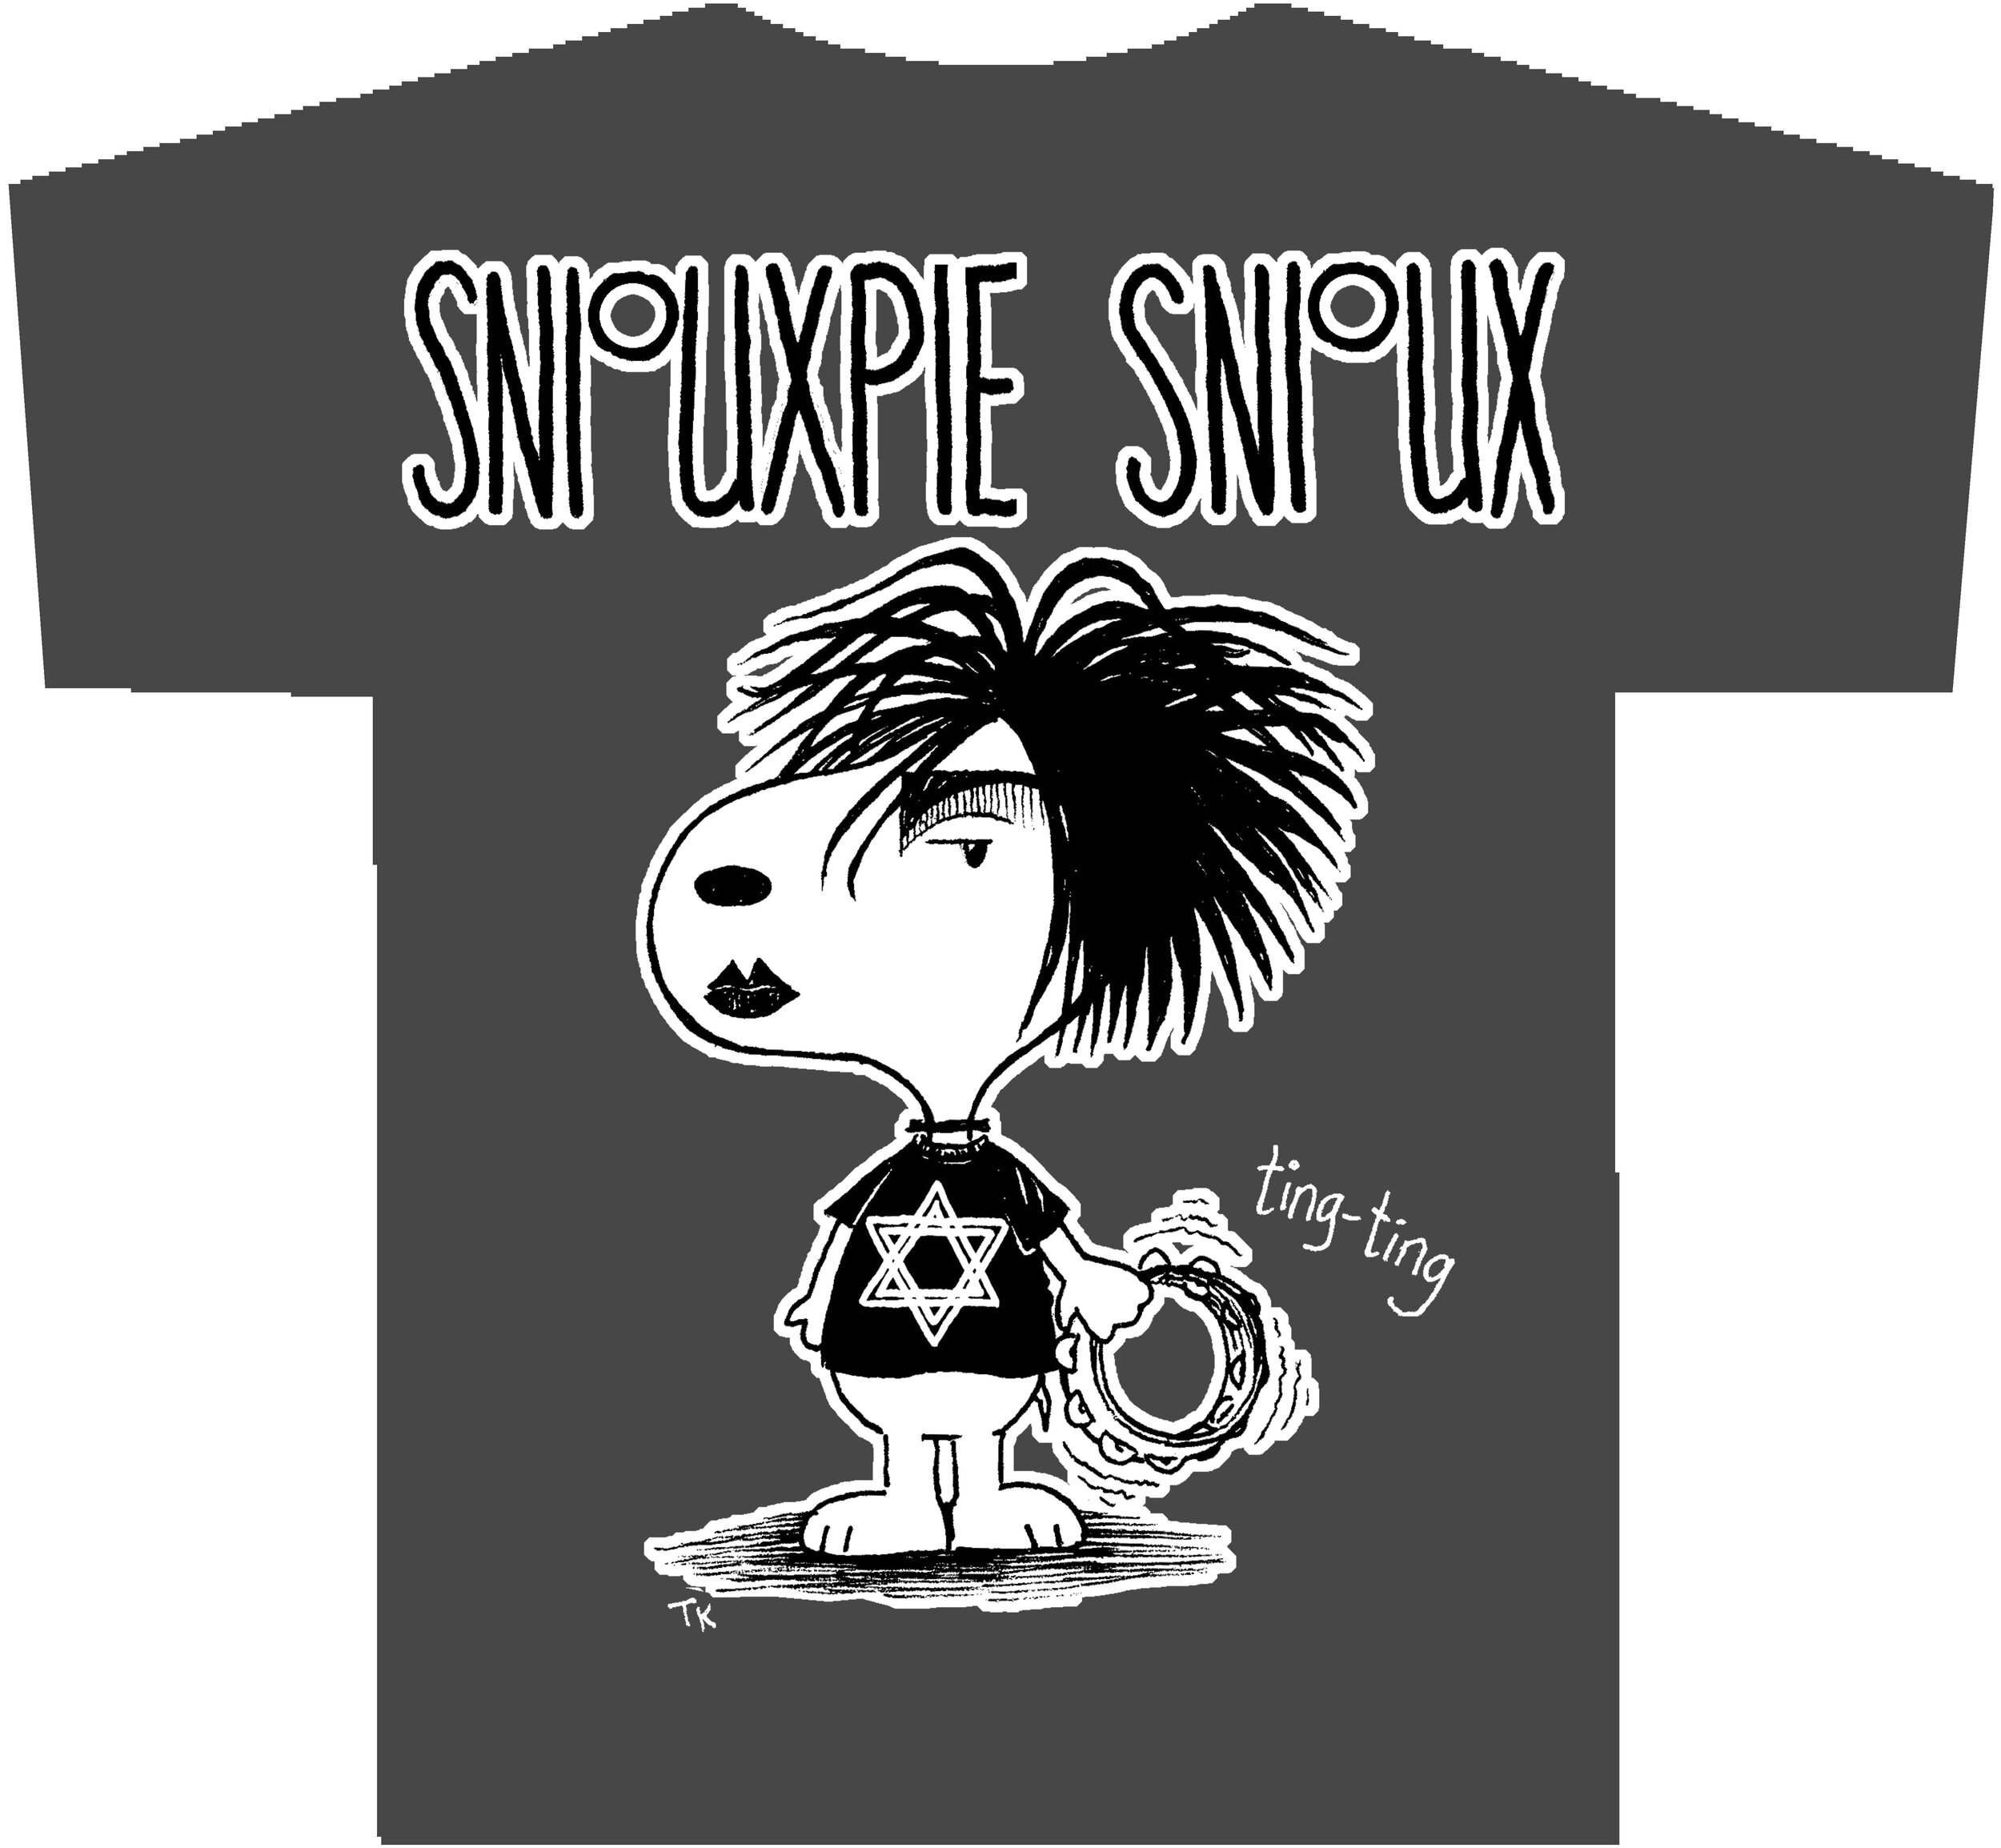 "Sniouxpie Snioux" shirts